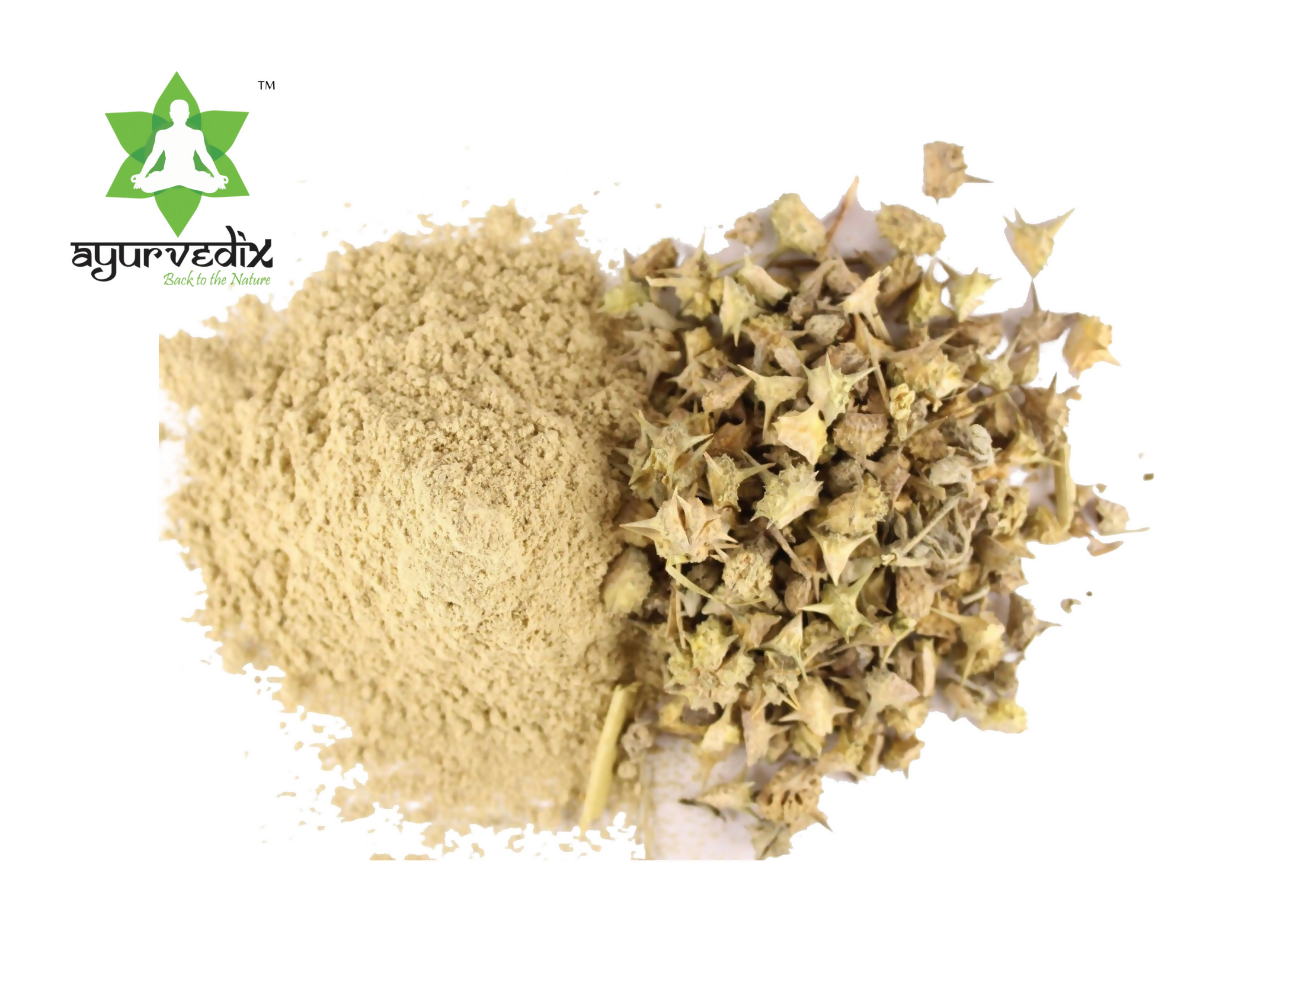 Ayurvedix Organic Gokshura Powder